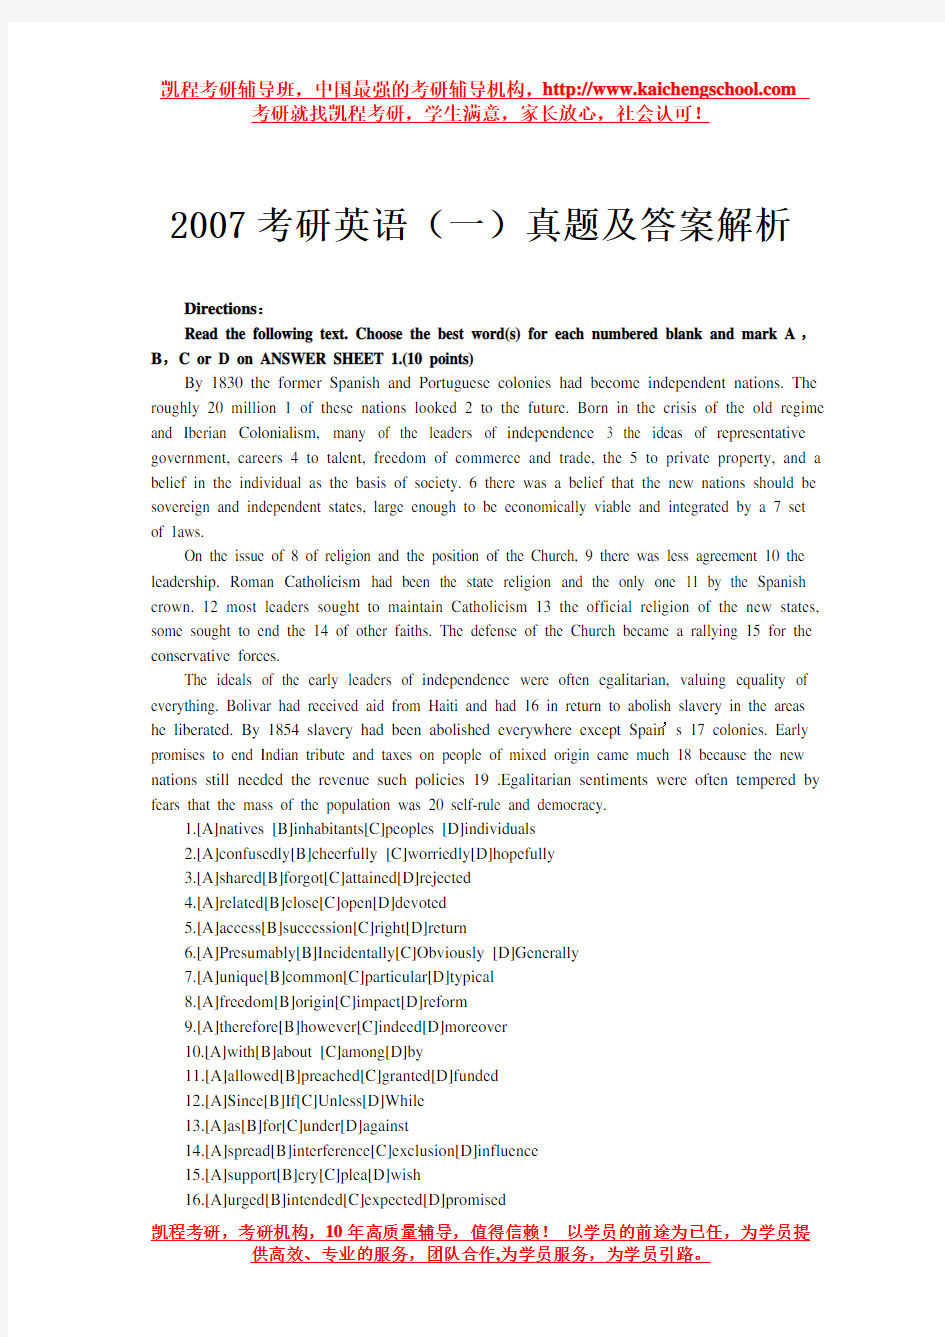 2007考研英语(一)真题及答案解析